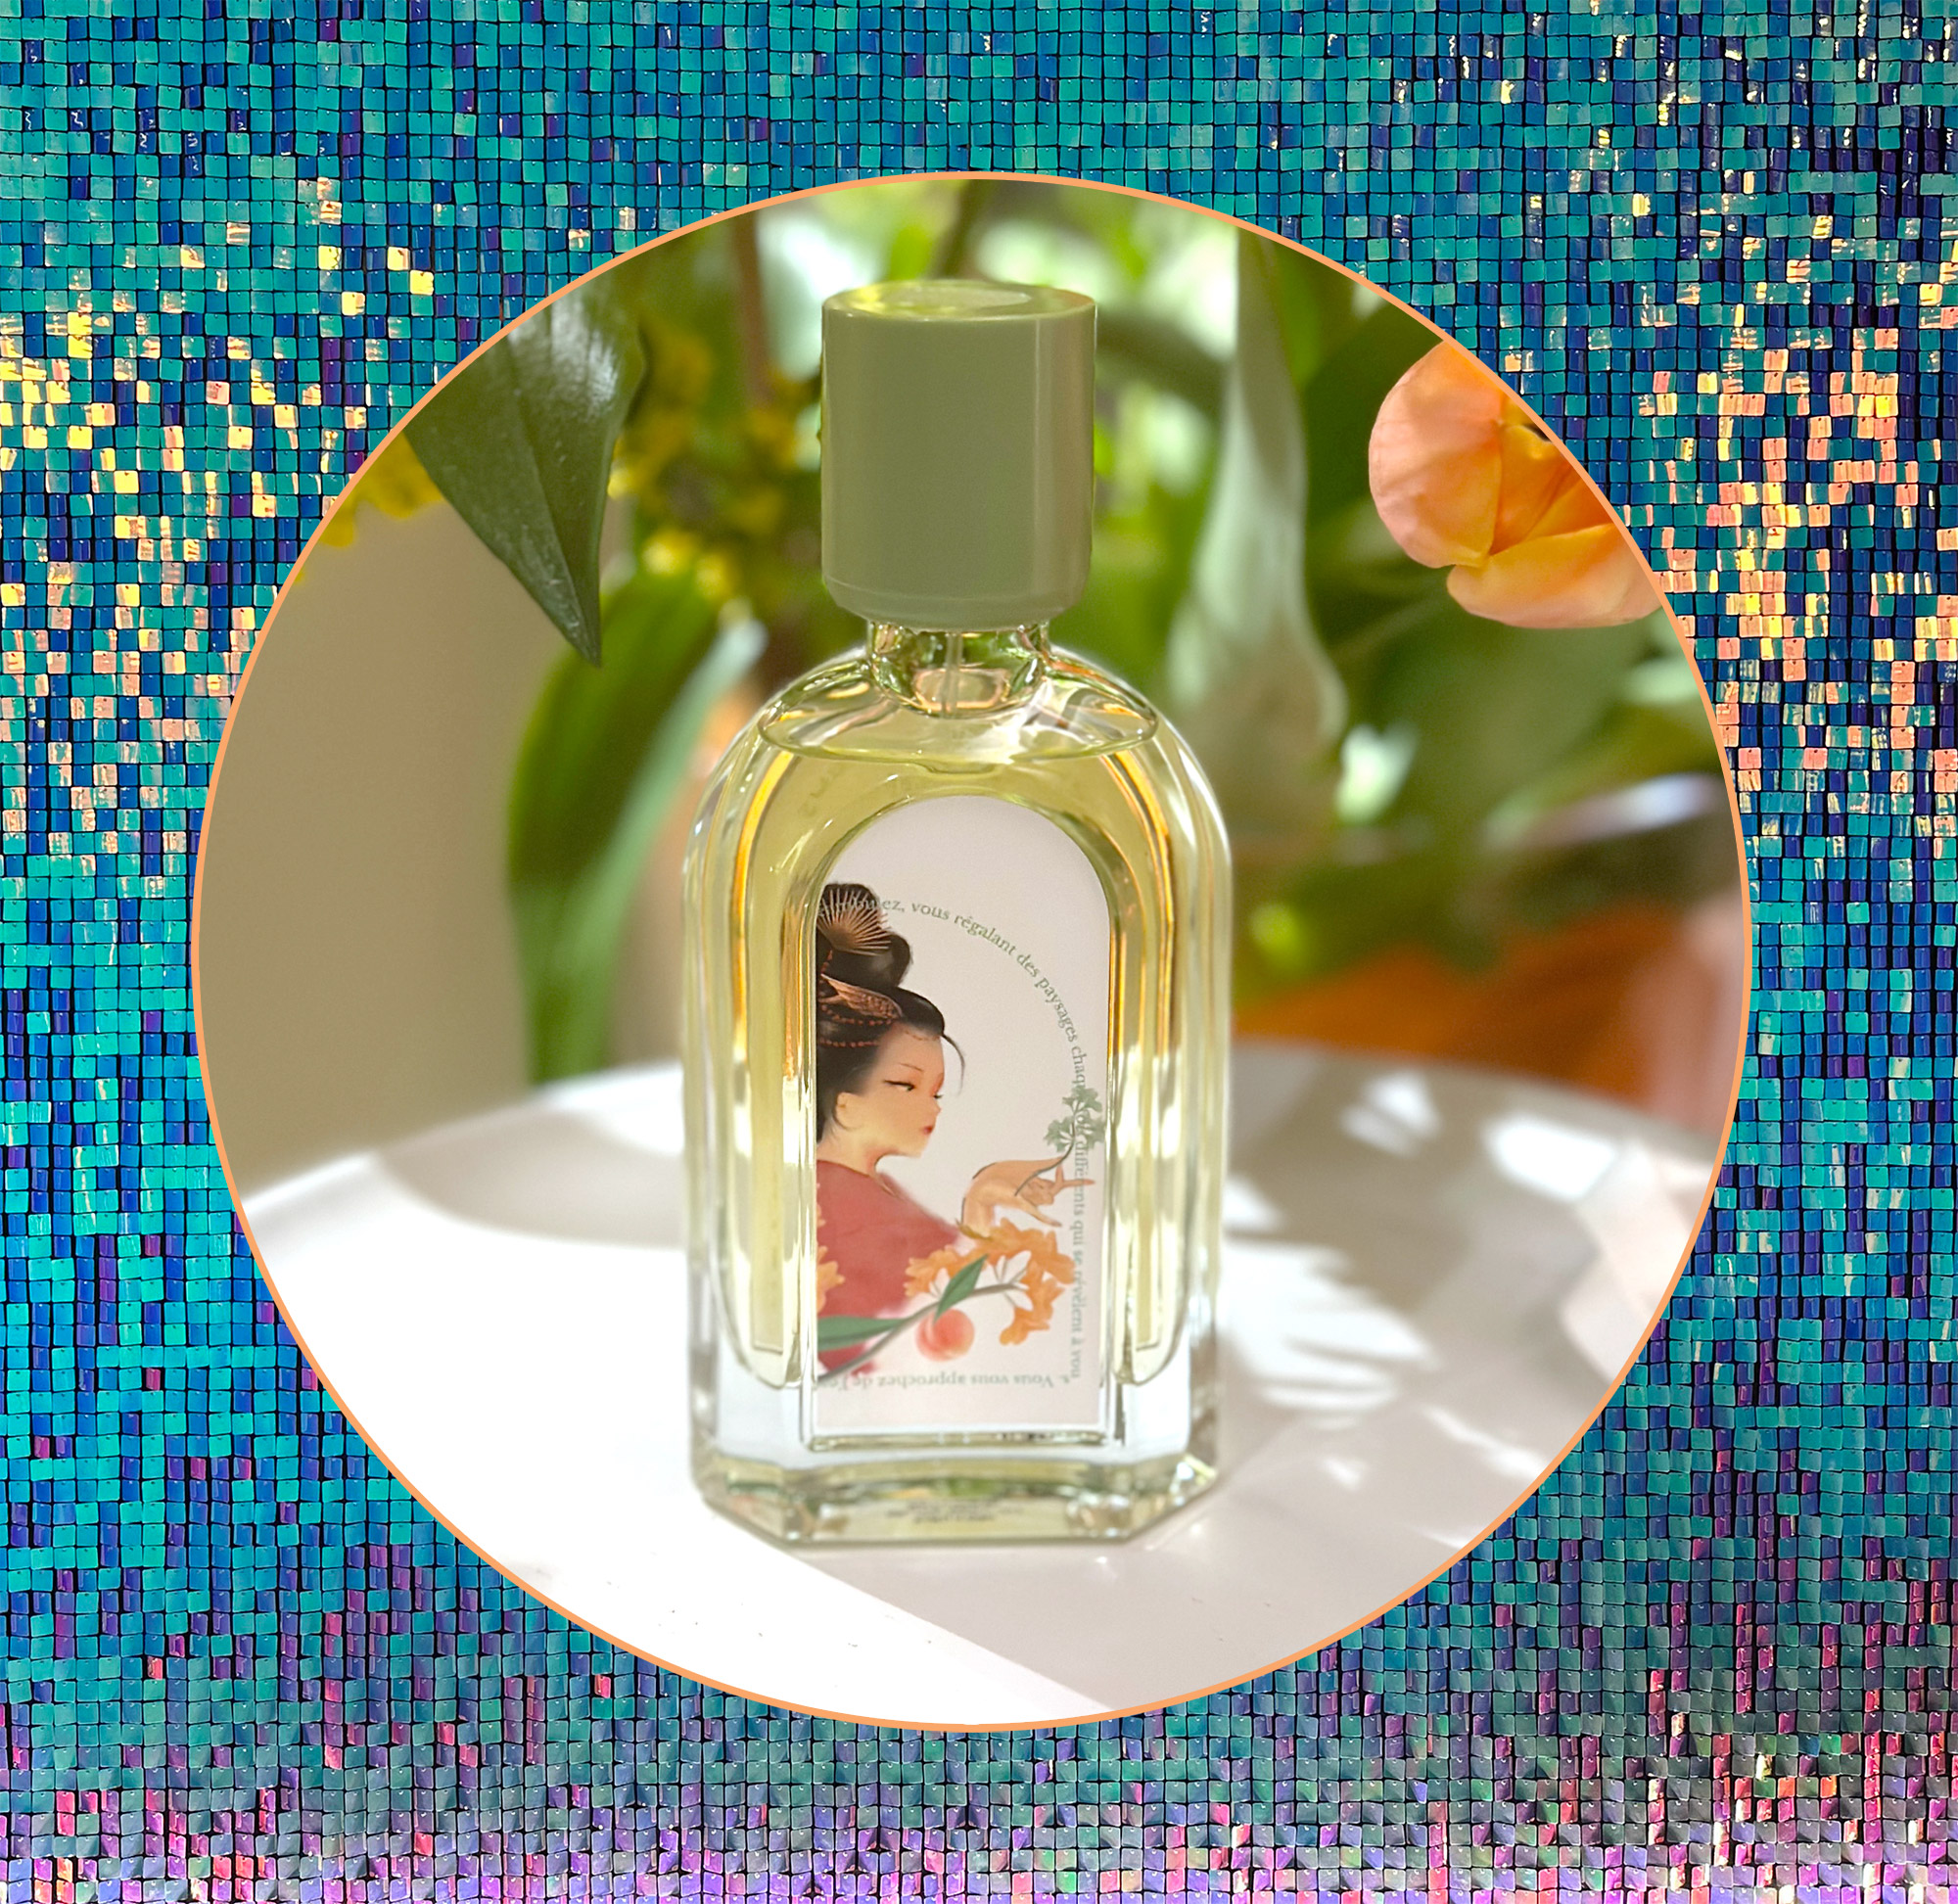 ESXENCE 2023: Mystical Fragrances by Wesker ~ Fragrance Reviews